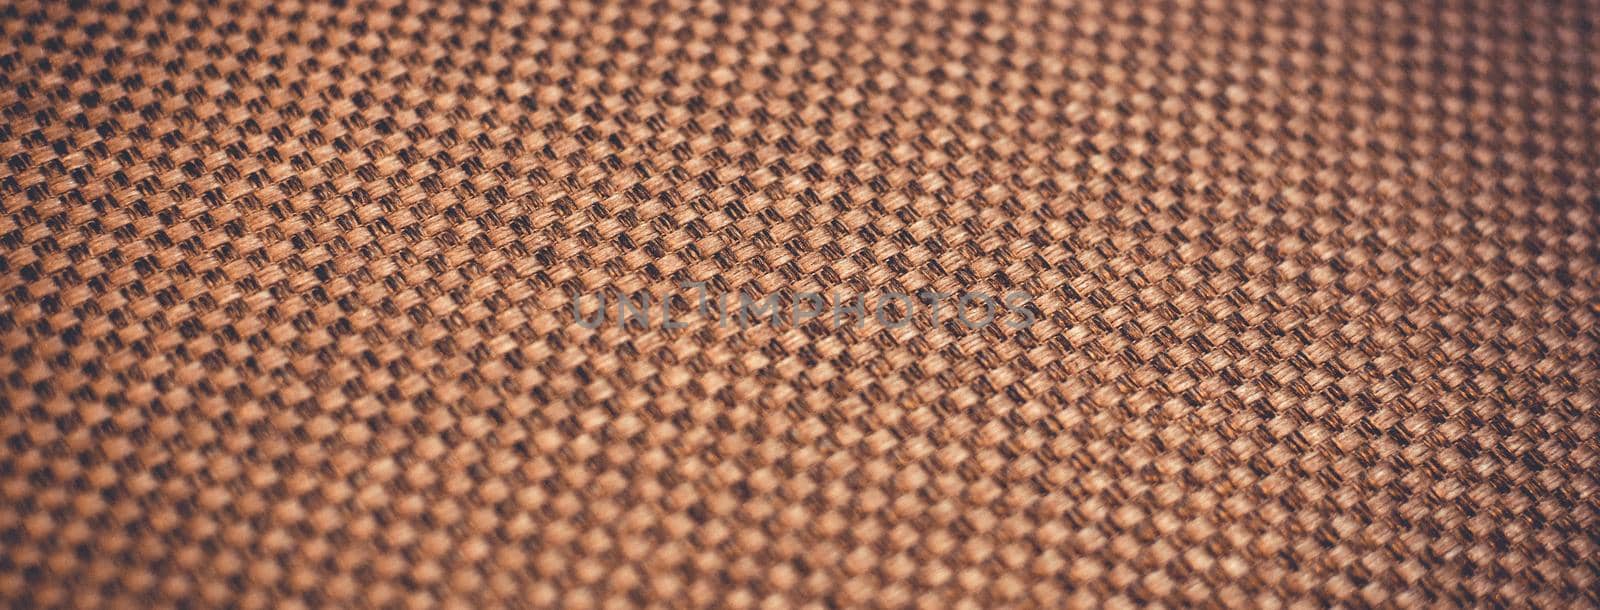 Fabric texture background Close up by vikiriki